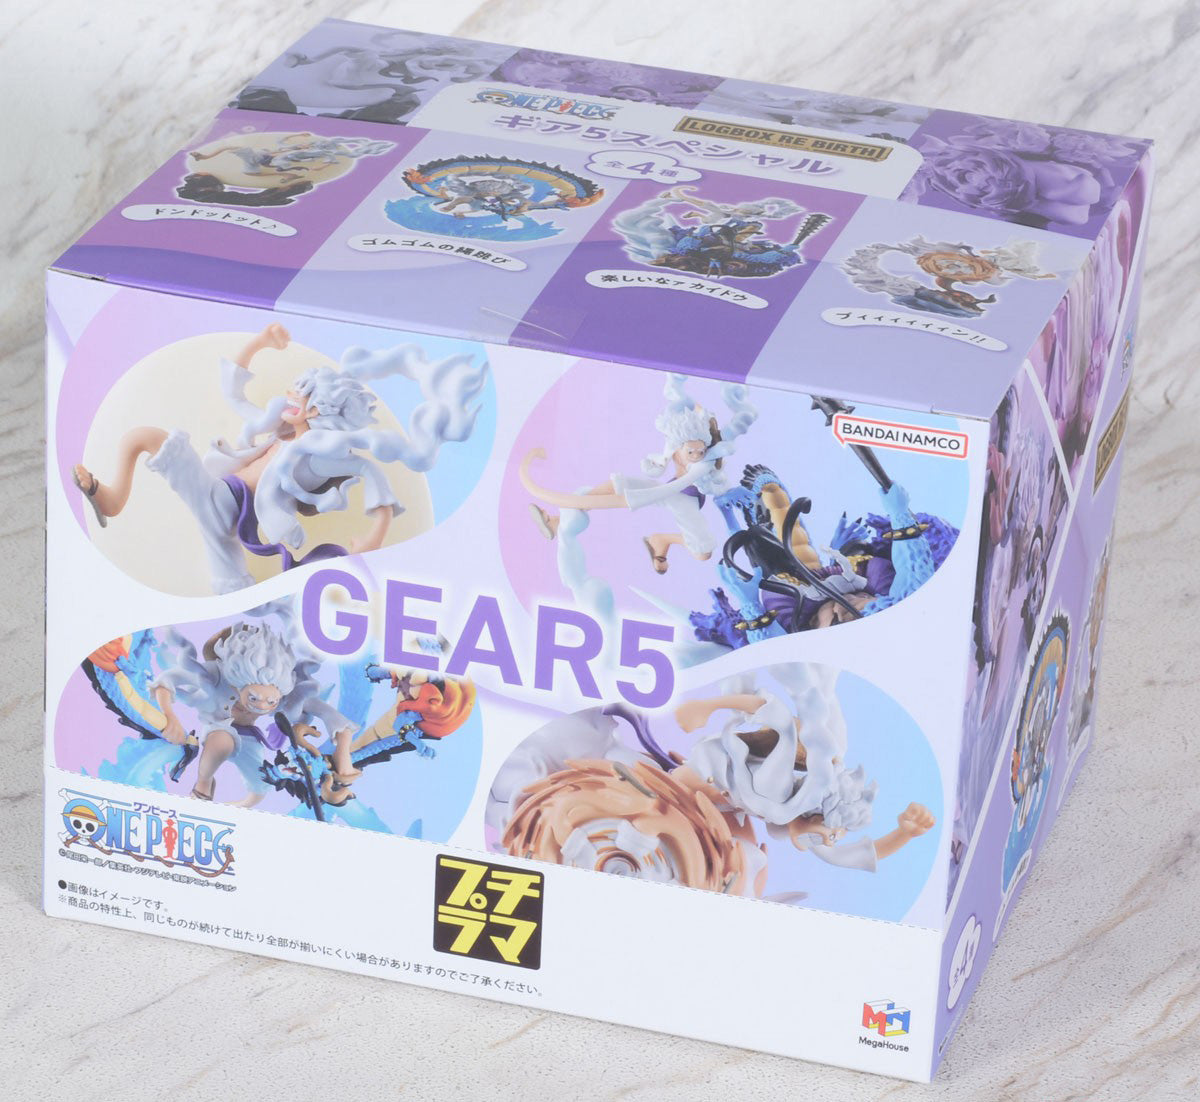 LOGBOX RE BIRTH Gear 5 Special (Box, 4 pcs)